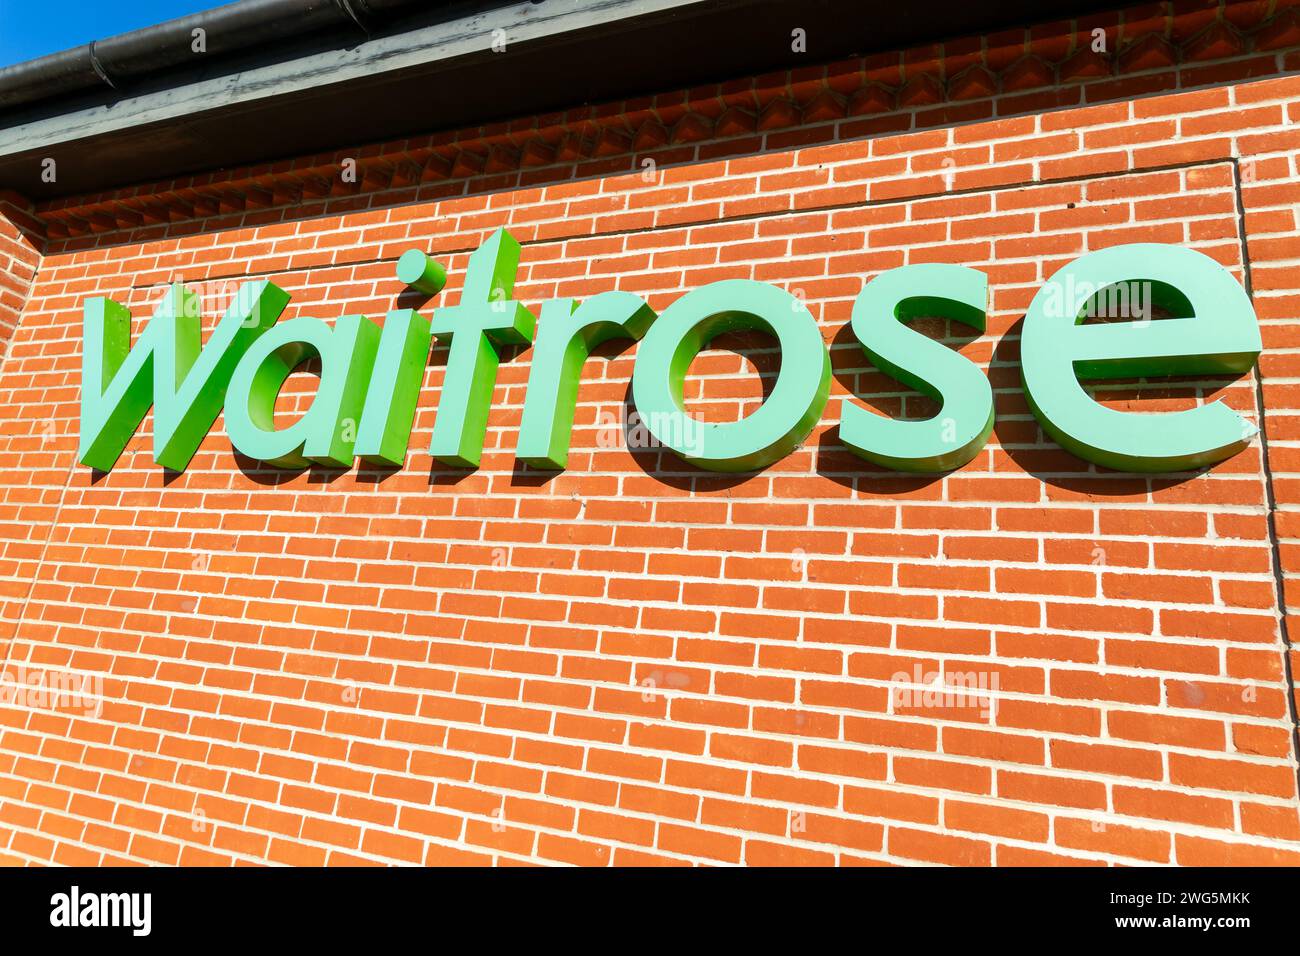 Waitrose shop sign on brick wall, UK Stock Photo